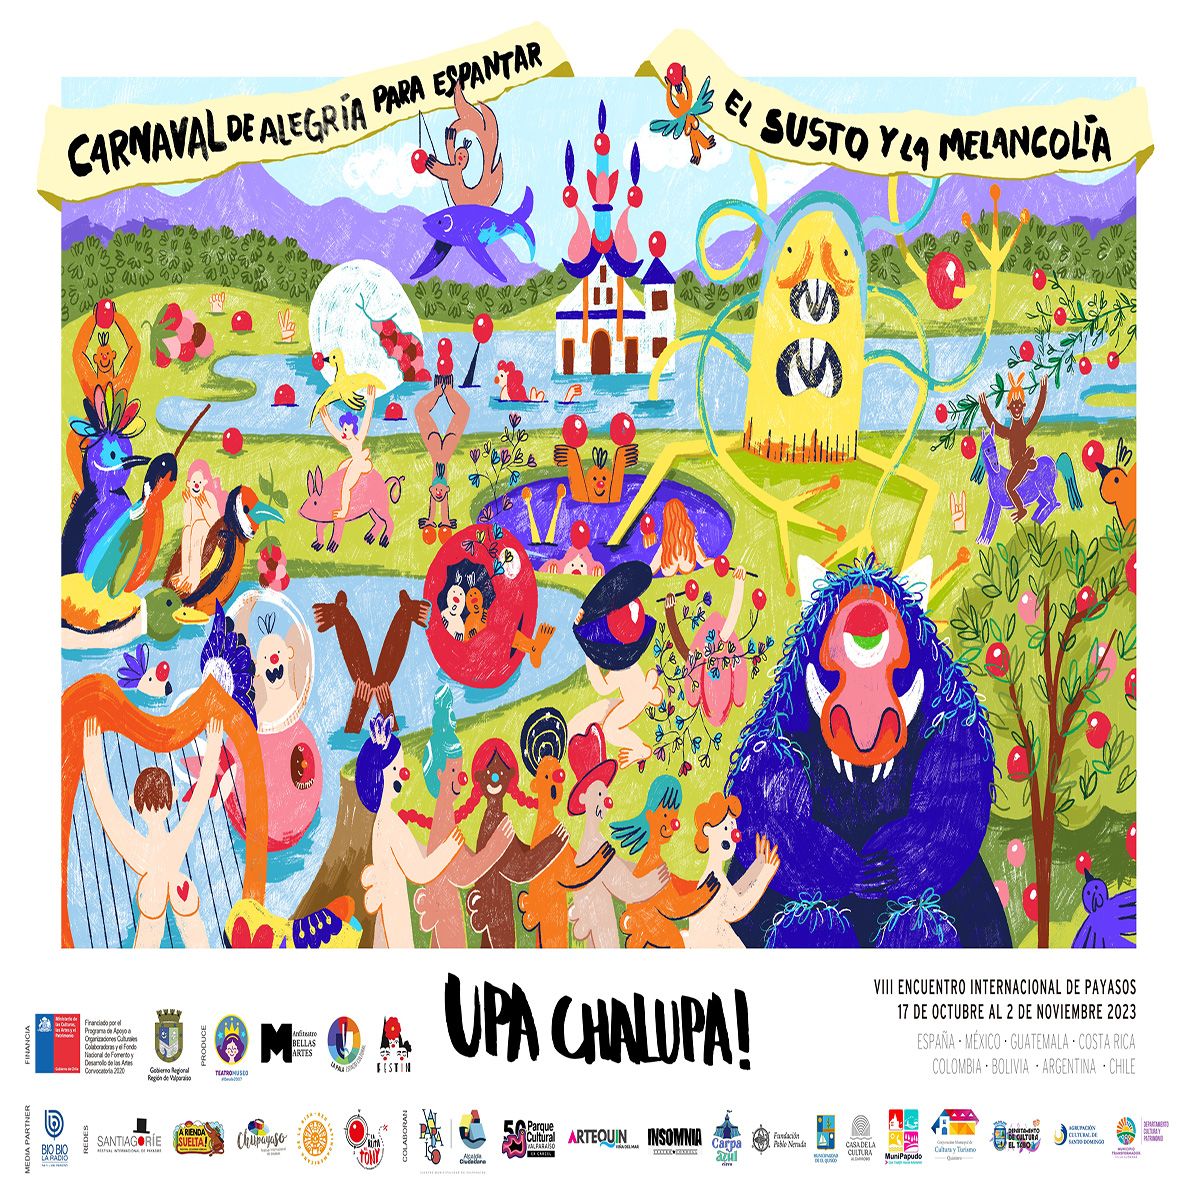 Upa Chalupa: Comienza el carnaval de la alegría en Valparaíso